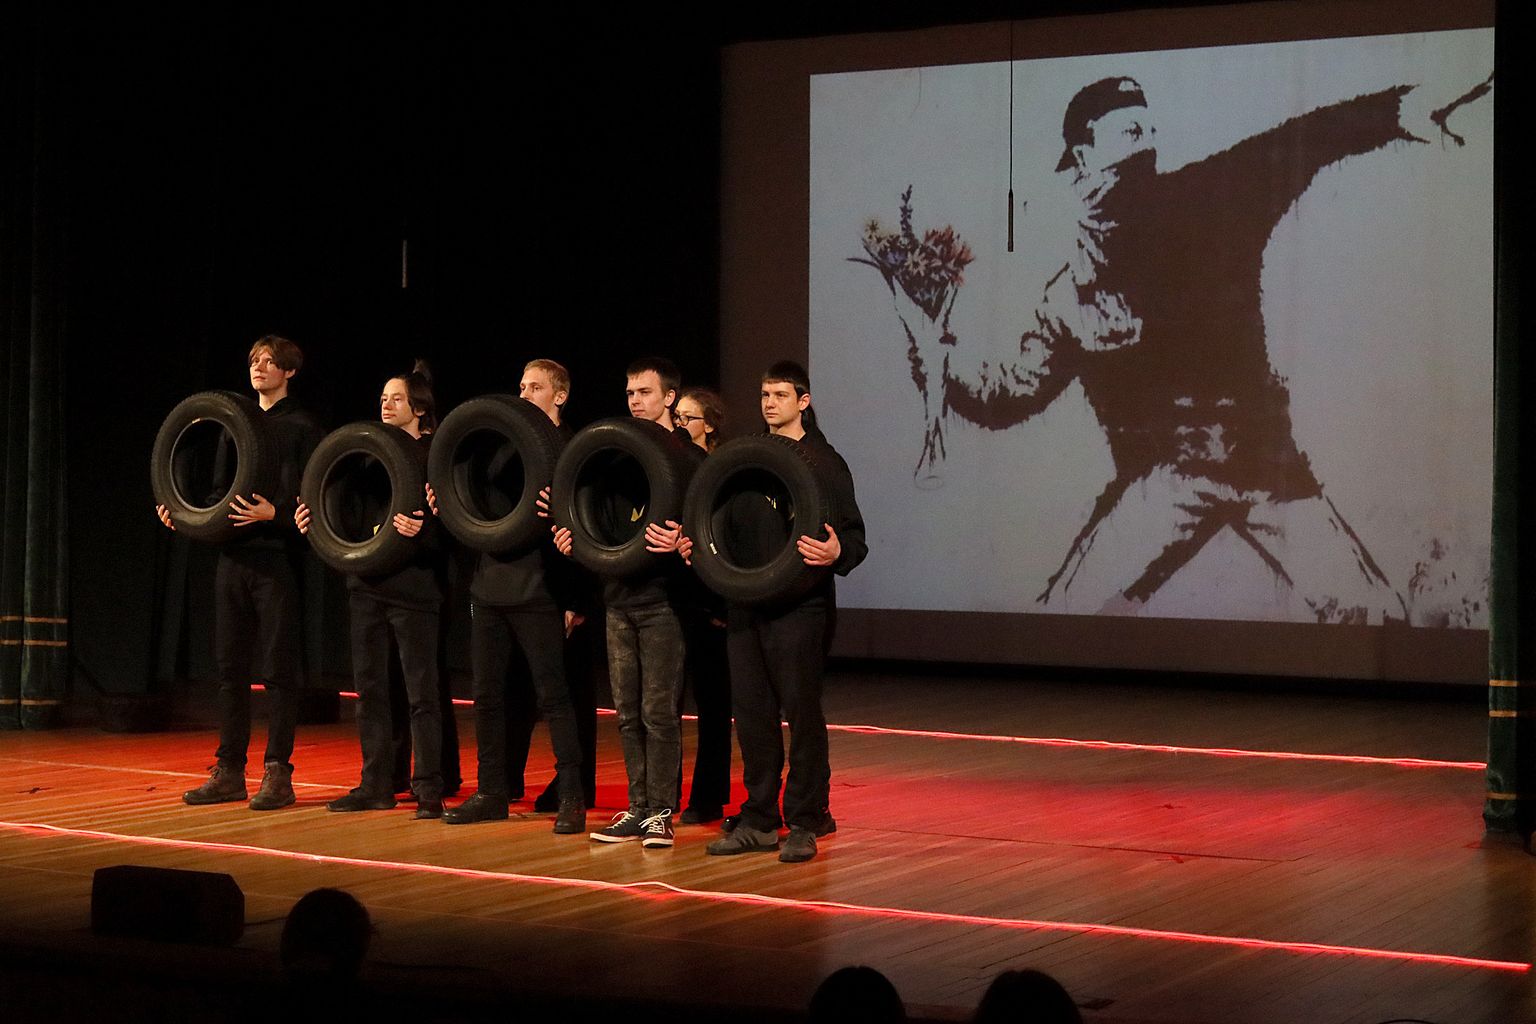 Спектакль "Шина - еще не колесо" на уездном фестивале школьных театров заслужил вторую премию от профессионального жюри.